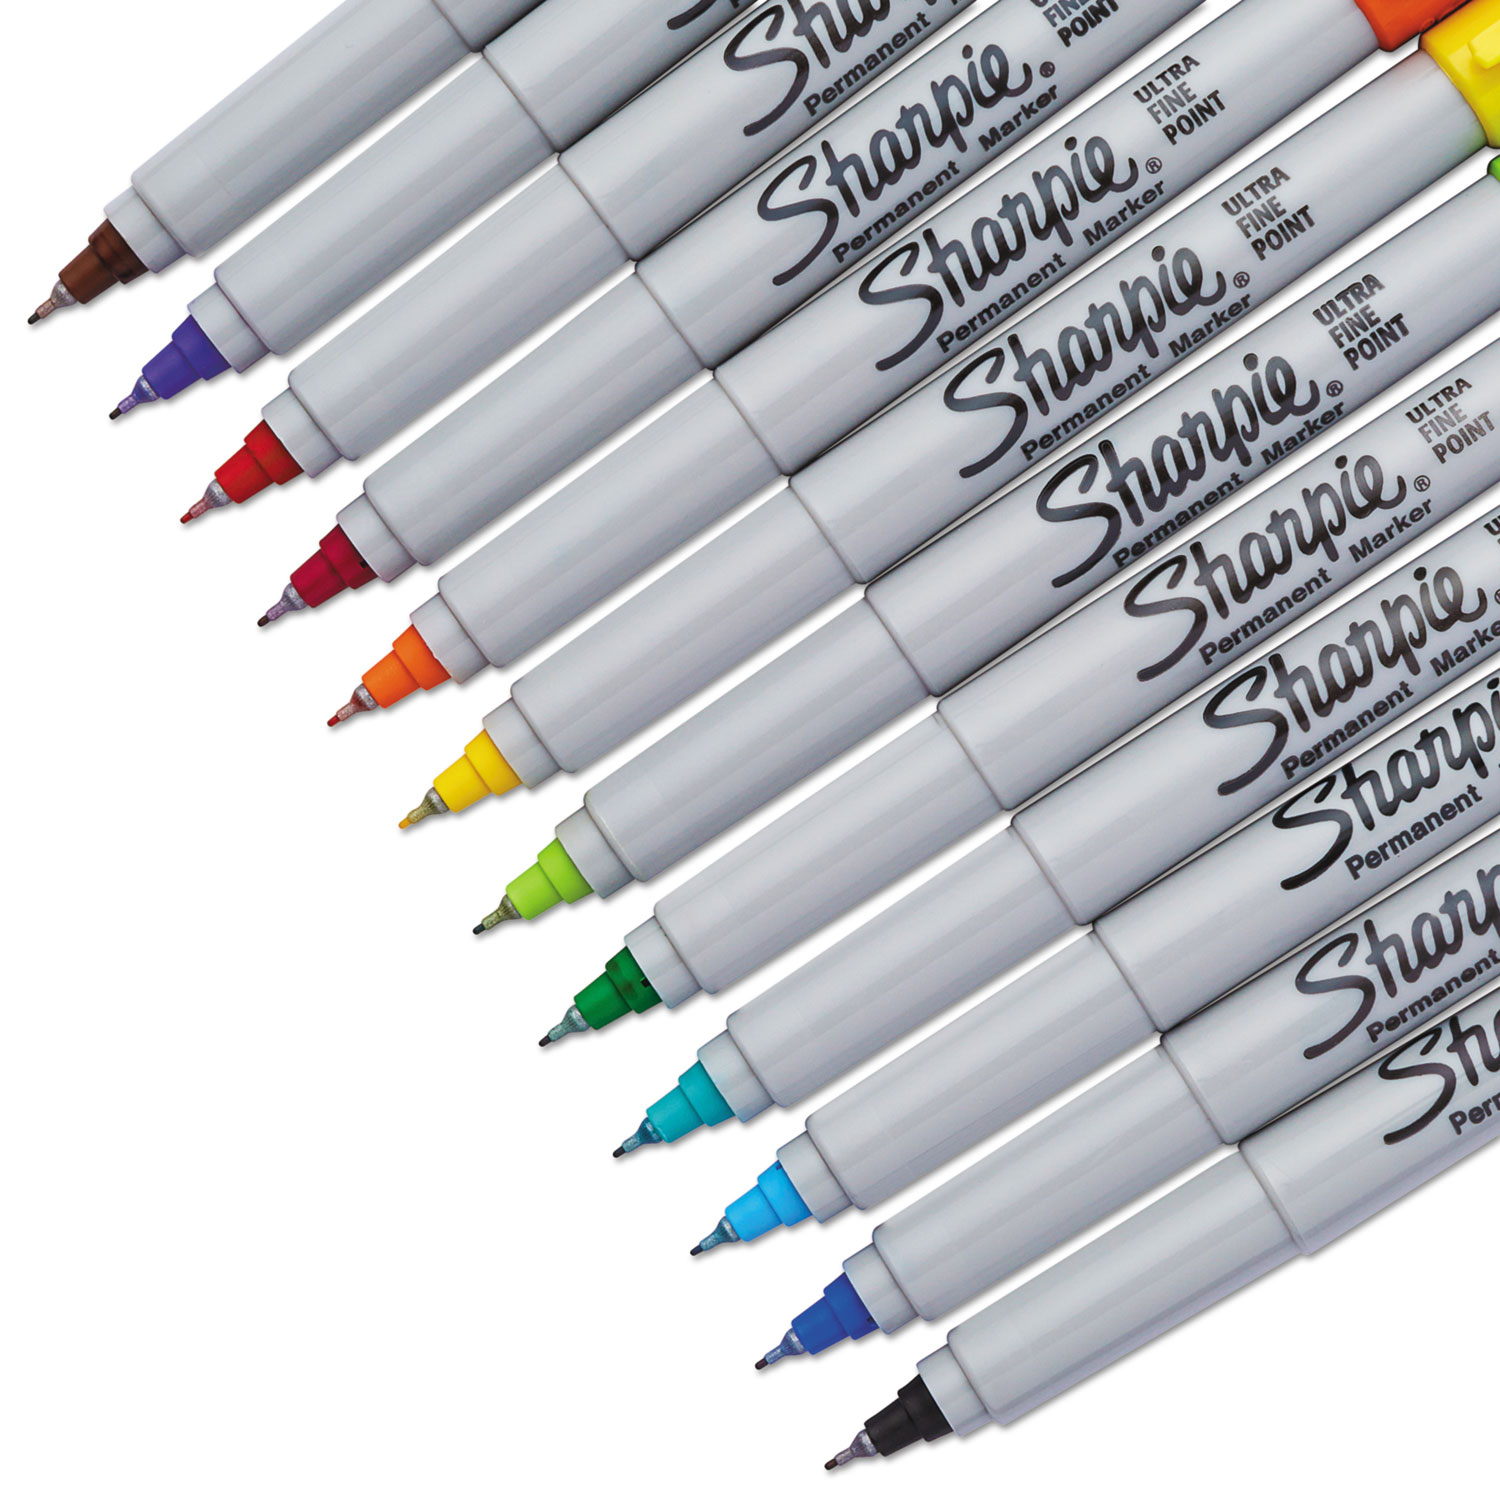 Sharpie Fine Tip Permanent Marker, Fine Bullet Tip, Assorted Colors, 65/Pack